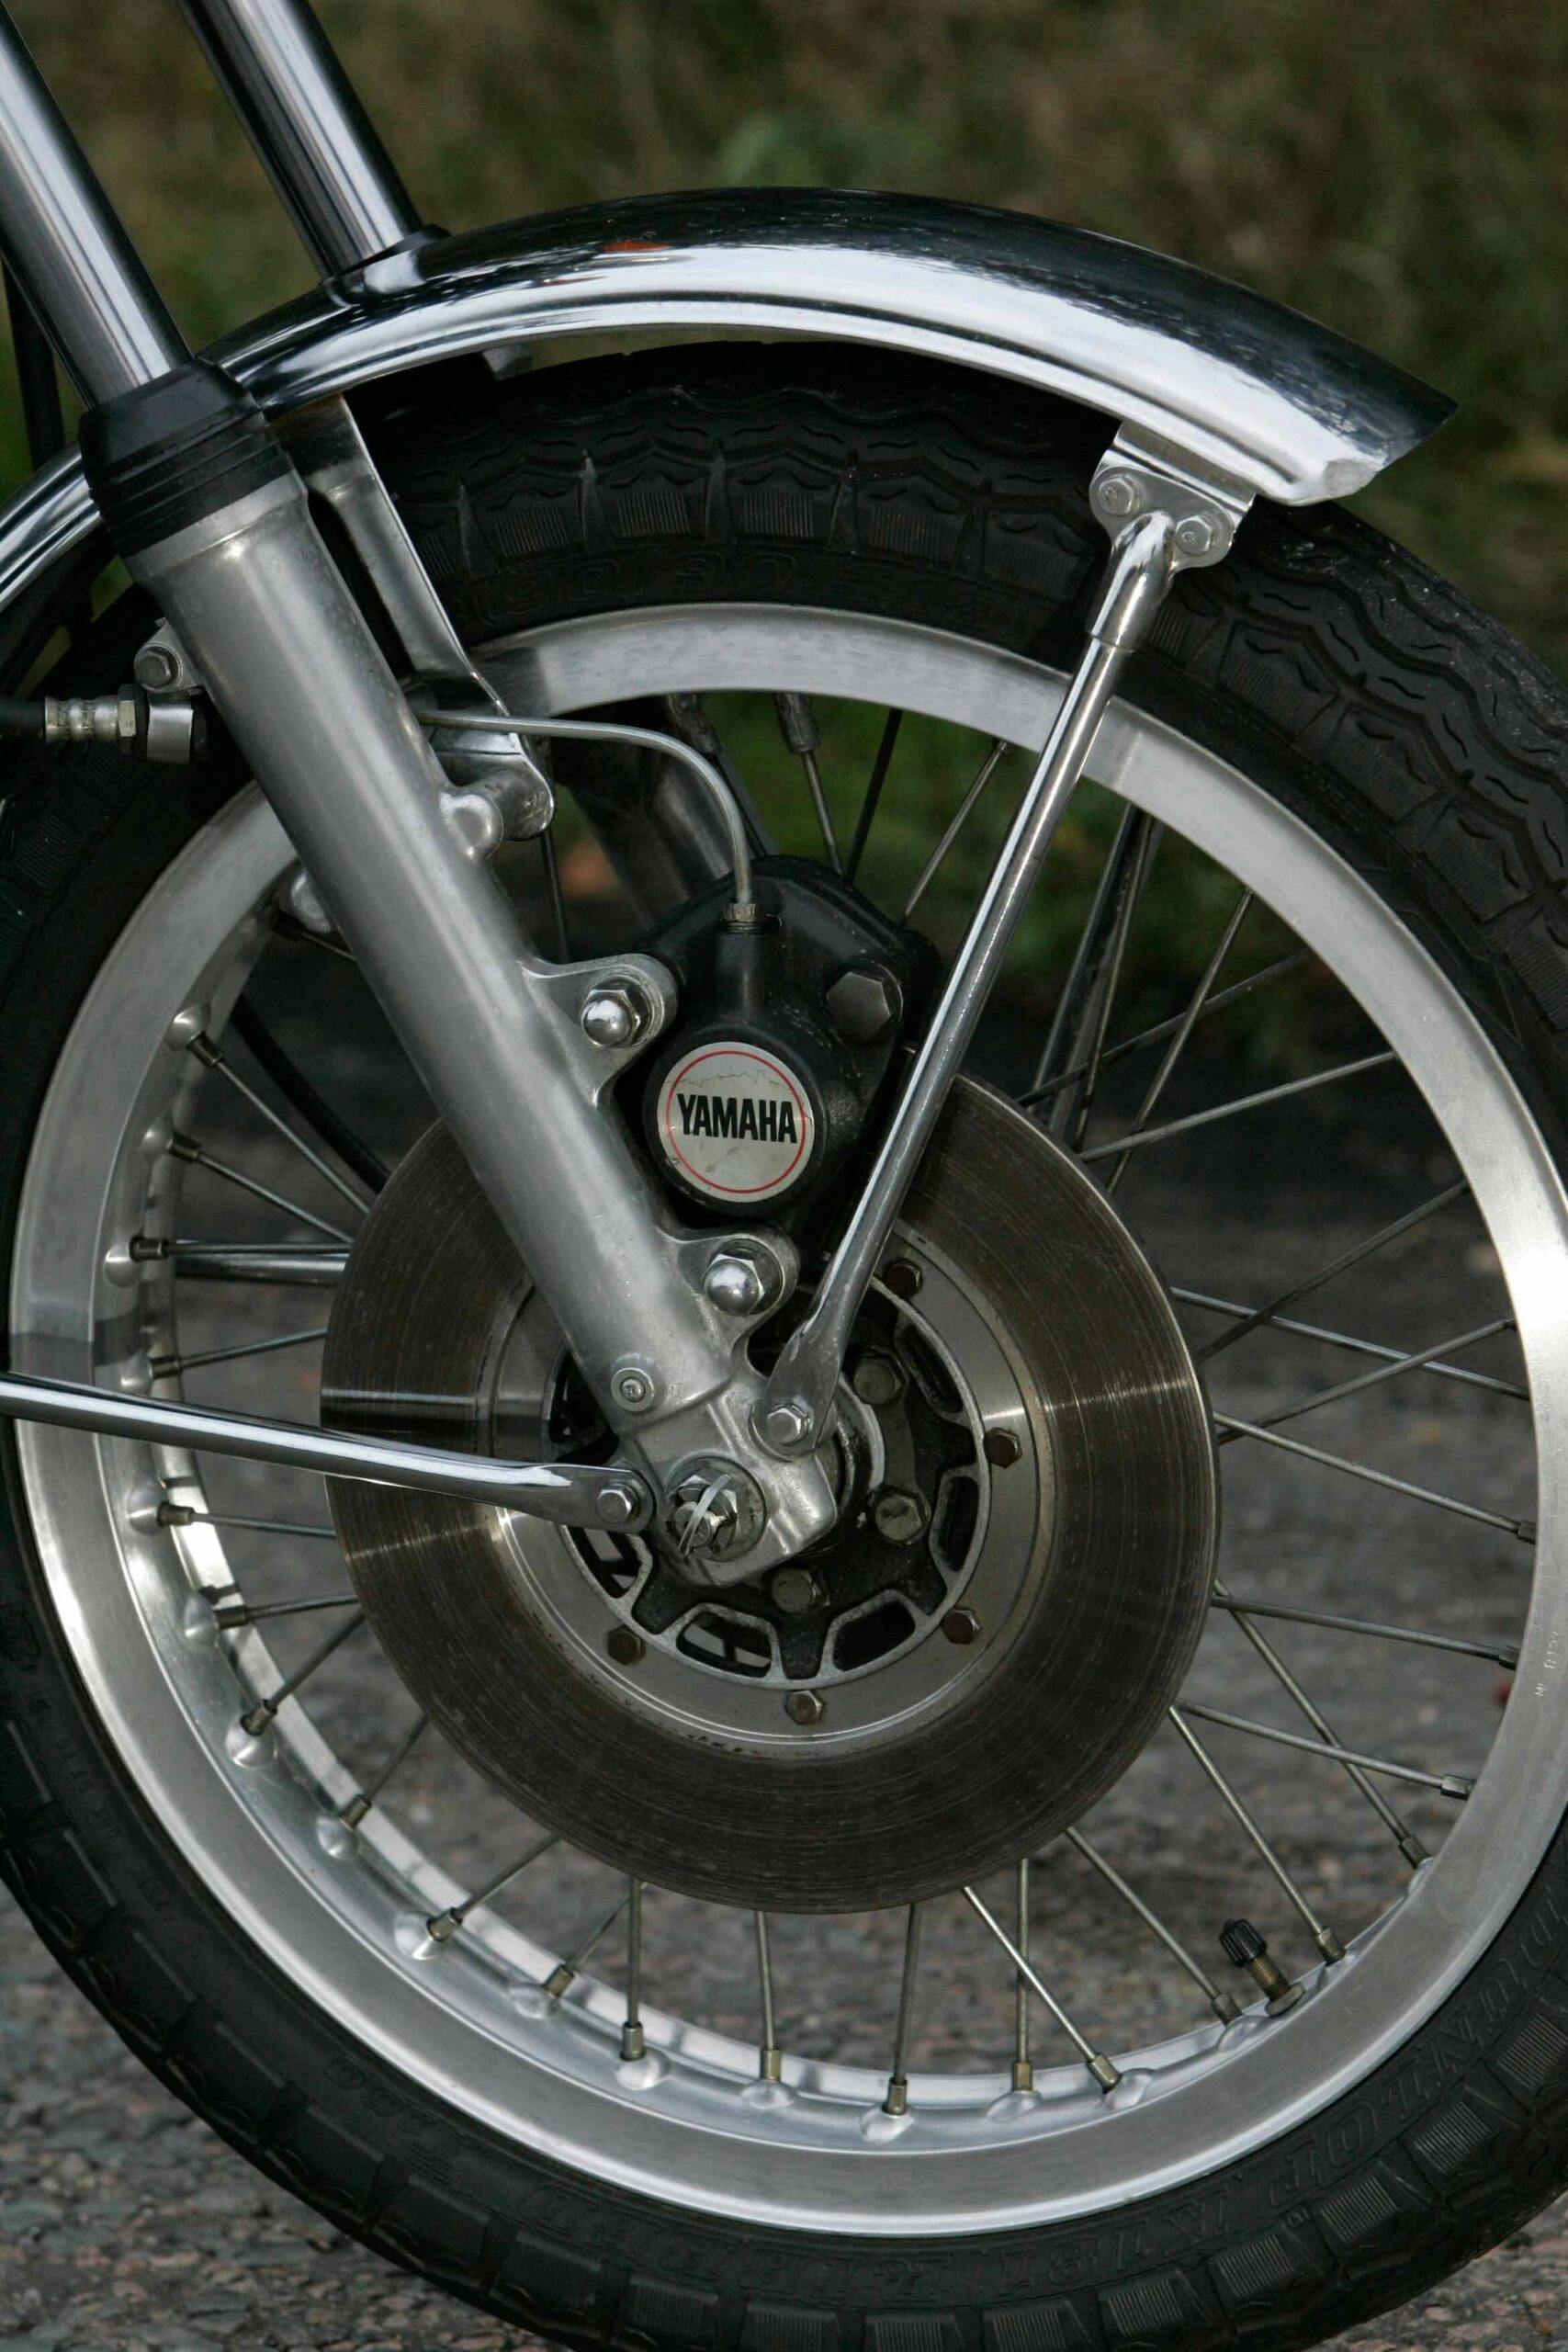 1974 Yamaha RD350 front wheel brake